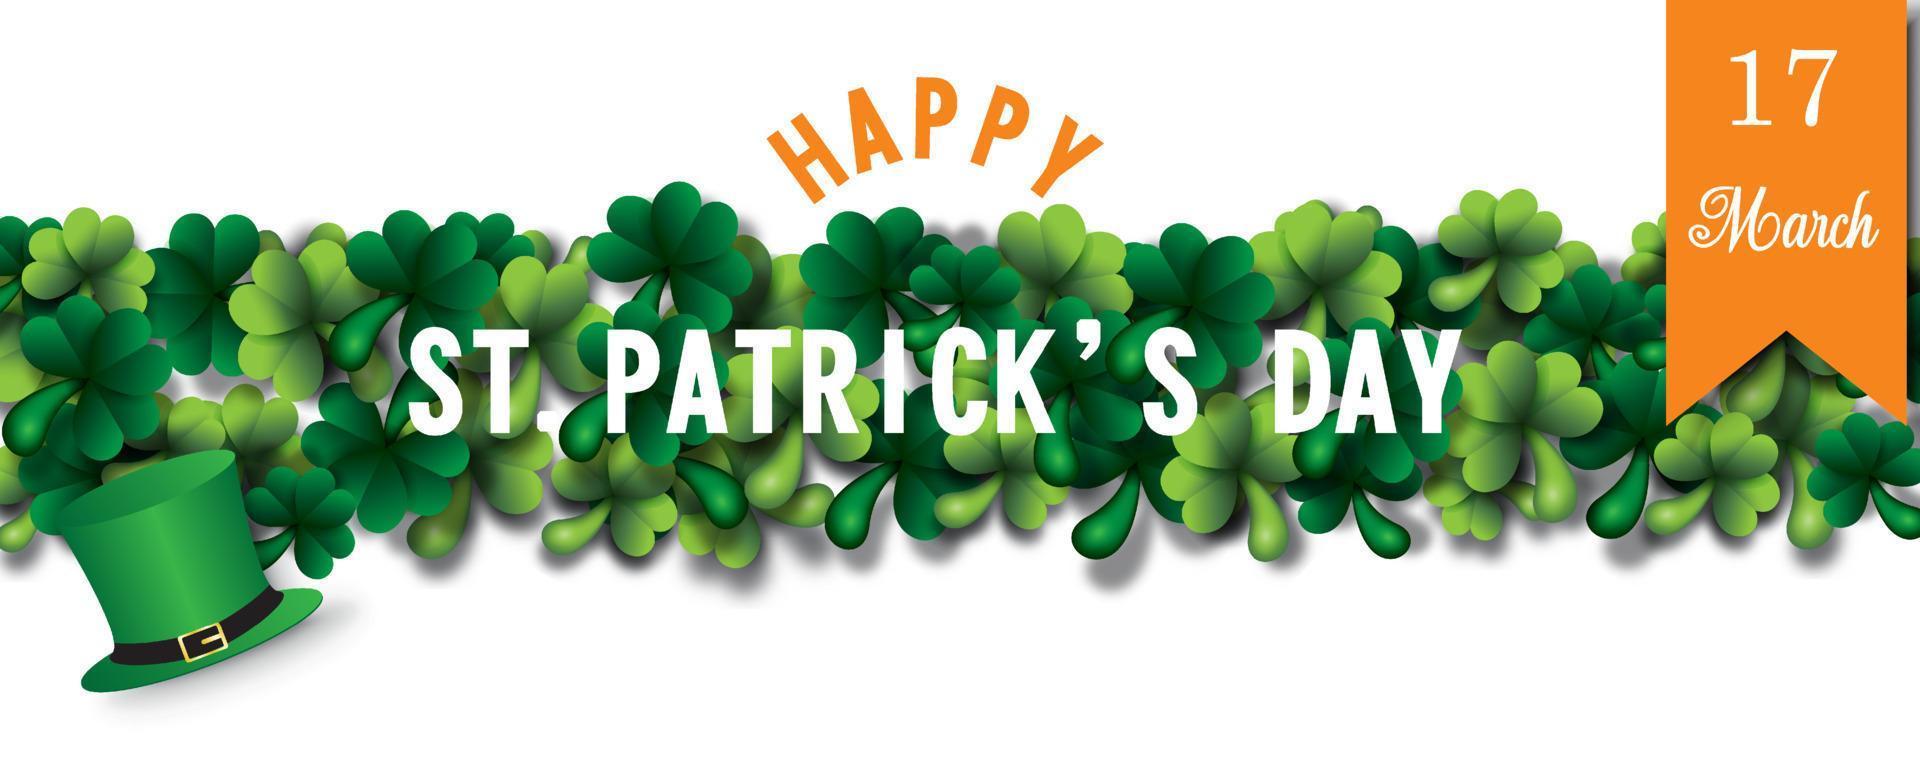 Happy Saint Patrick's Day Briefe, hoher Hut und das Band des Tages der Veranstaltung auf Shamrock-Pflanzen und weißem Hintergrund. St Patrick Tagesgrußkarte im Vektordesign vektor